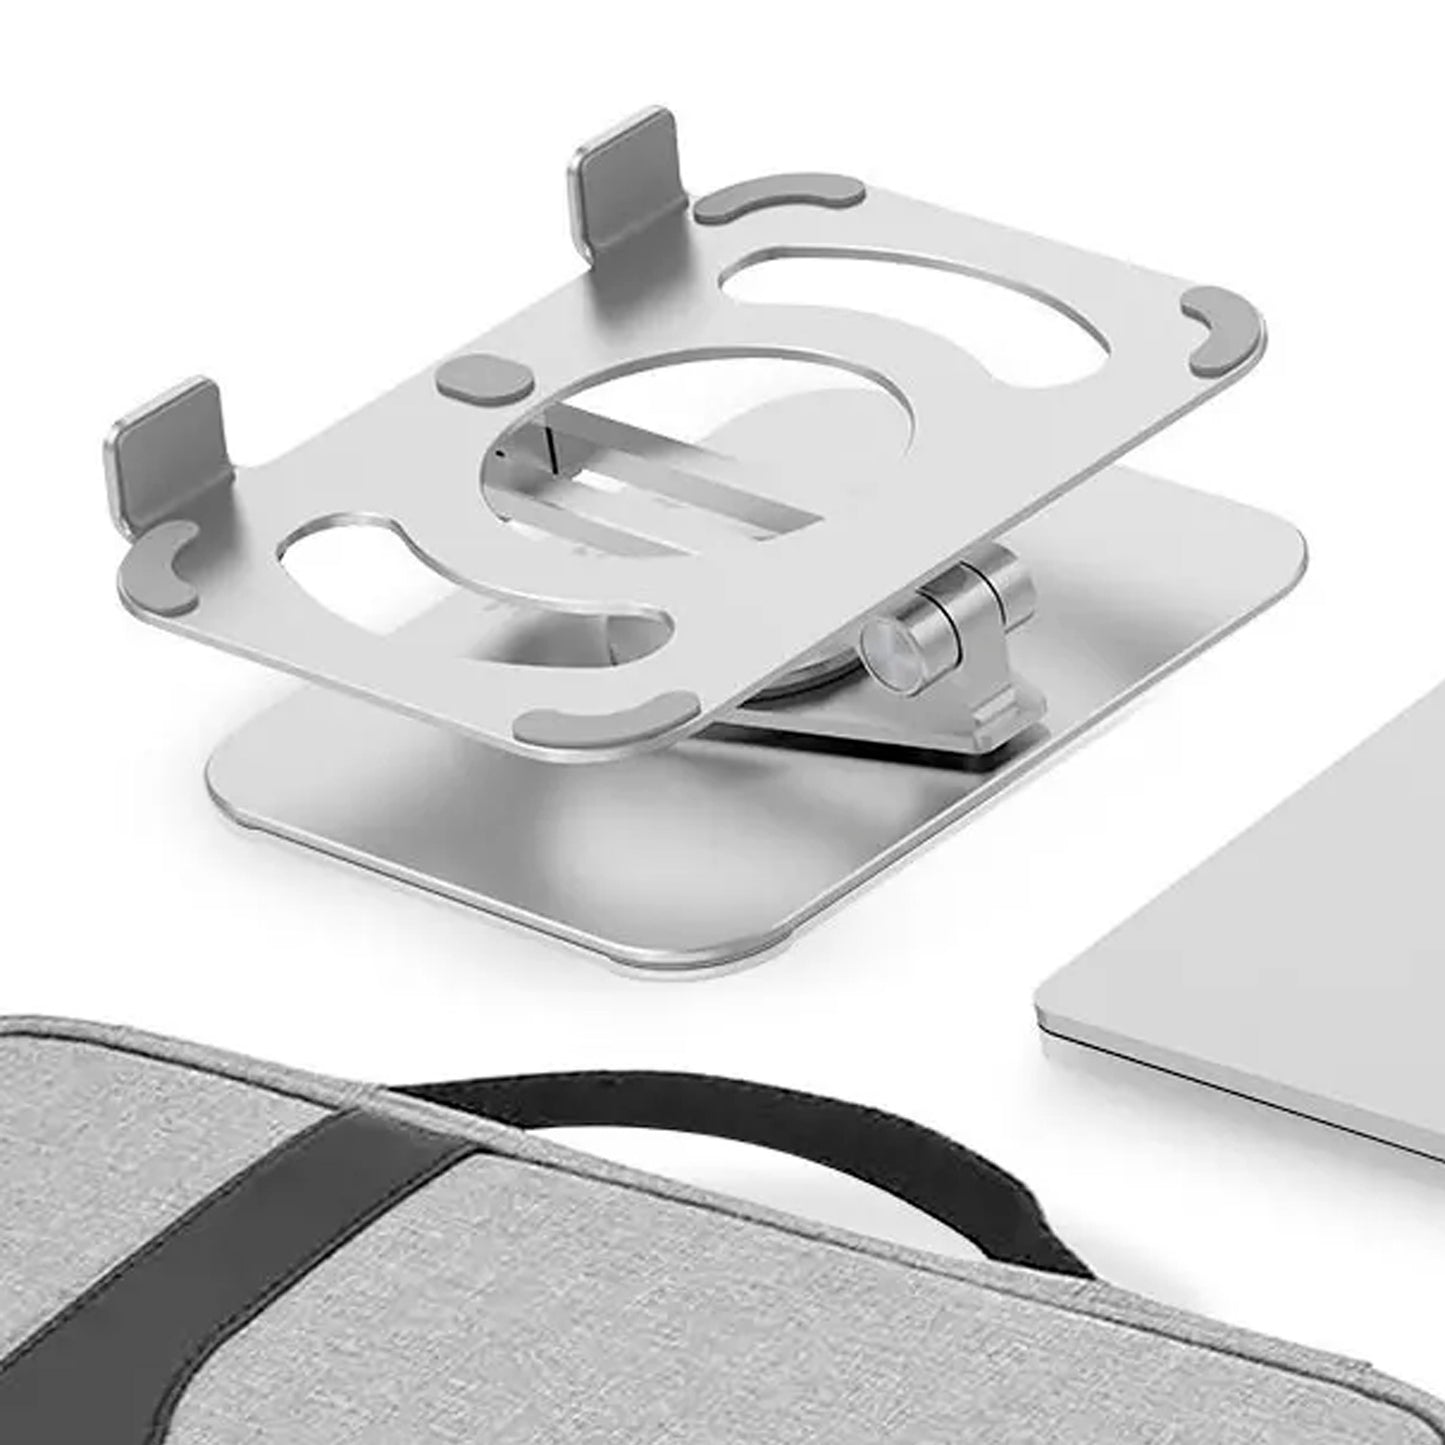 Supporto metallico pieghevole e ruotante a 360° per tablet